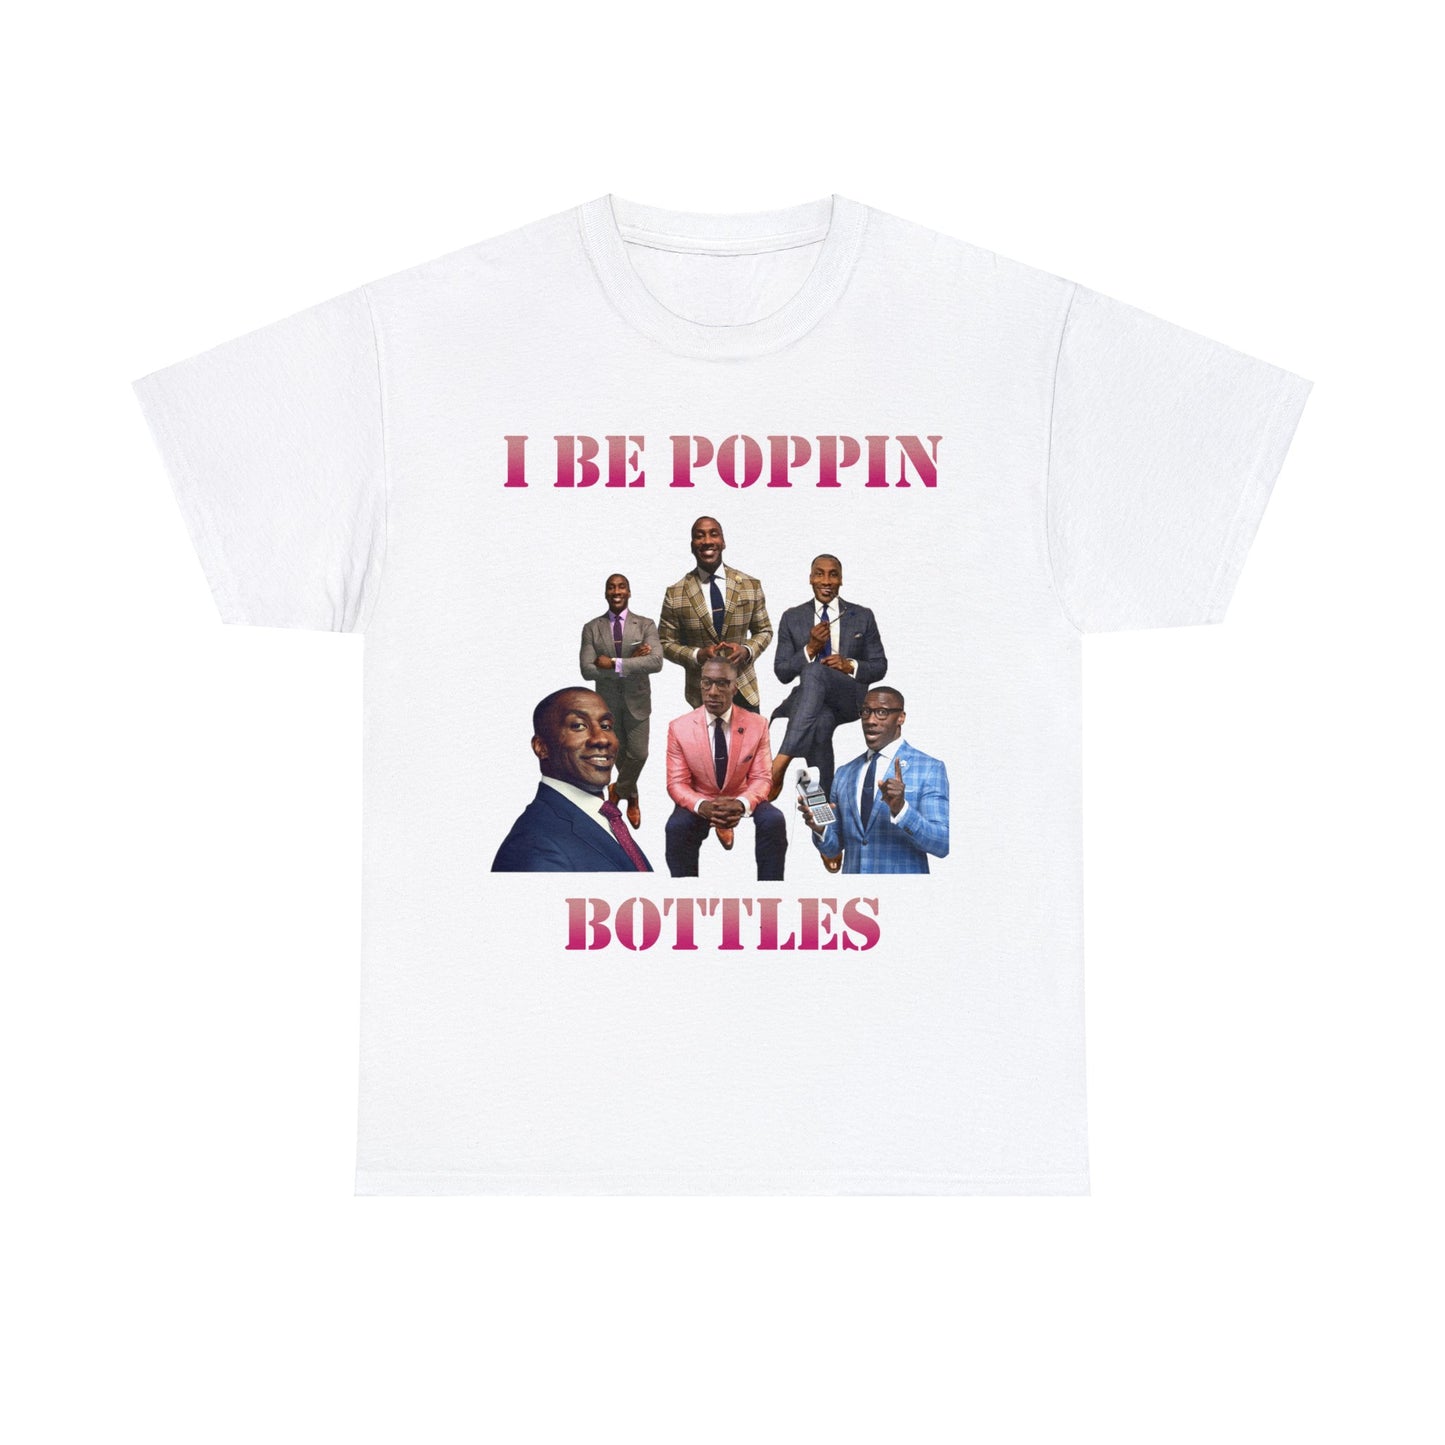 I be poppin bottles T-shirt